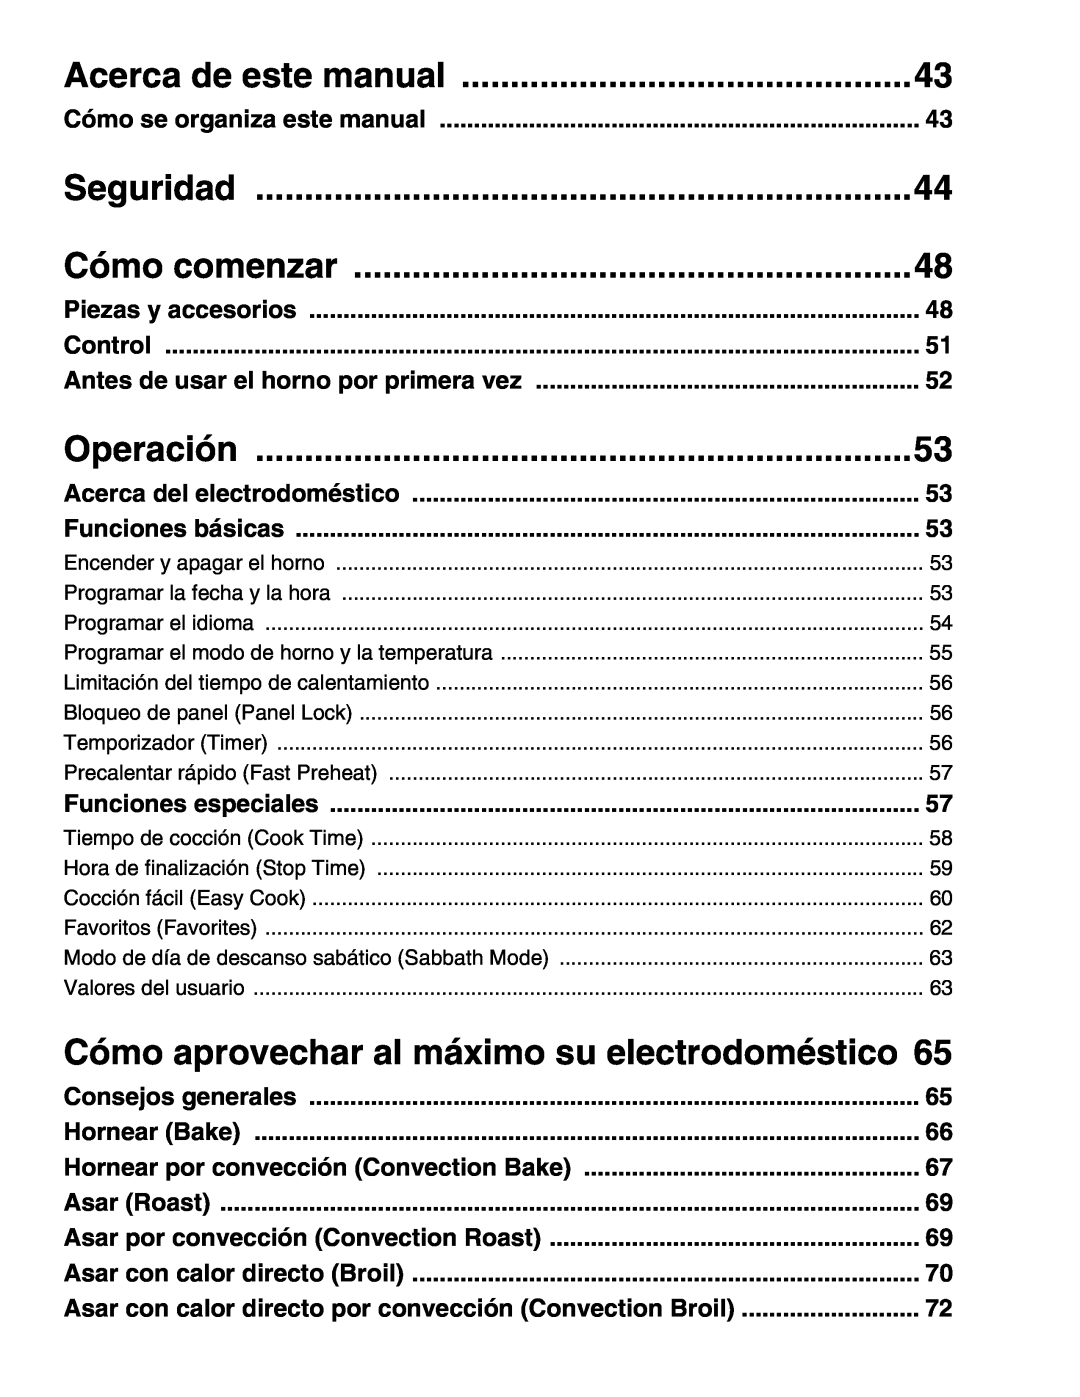 Thermador M301E Acerca de este manual, Seguridad, Cómo comenzar, Operación, Cómo aprovechar al máximo su electrodoméstico 